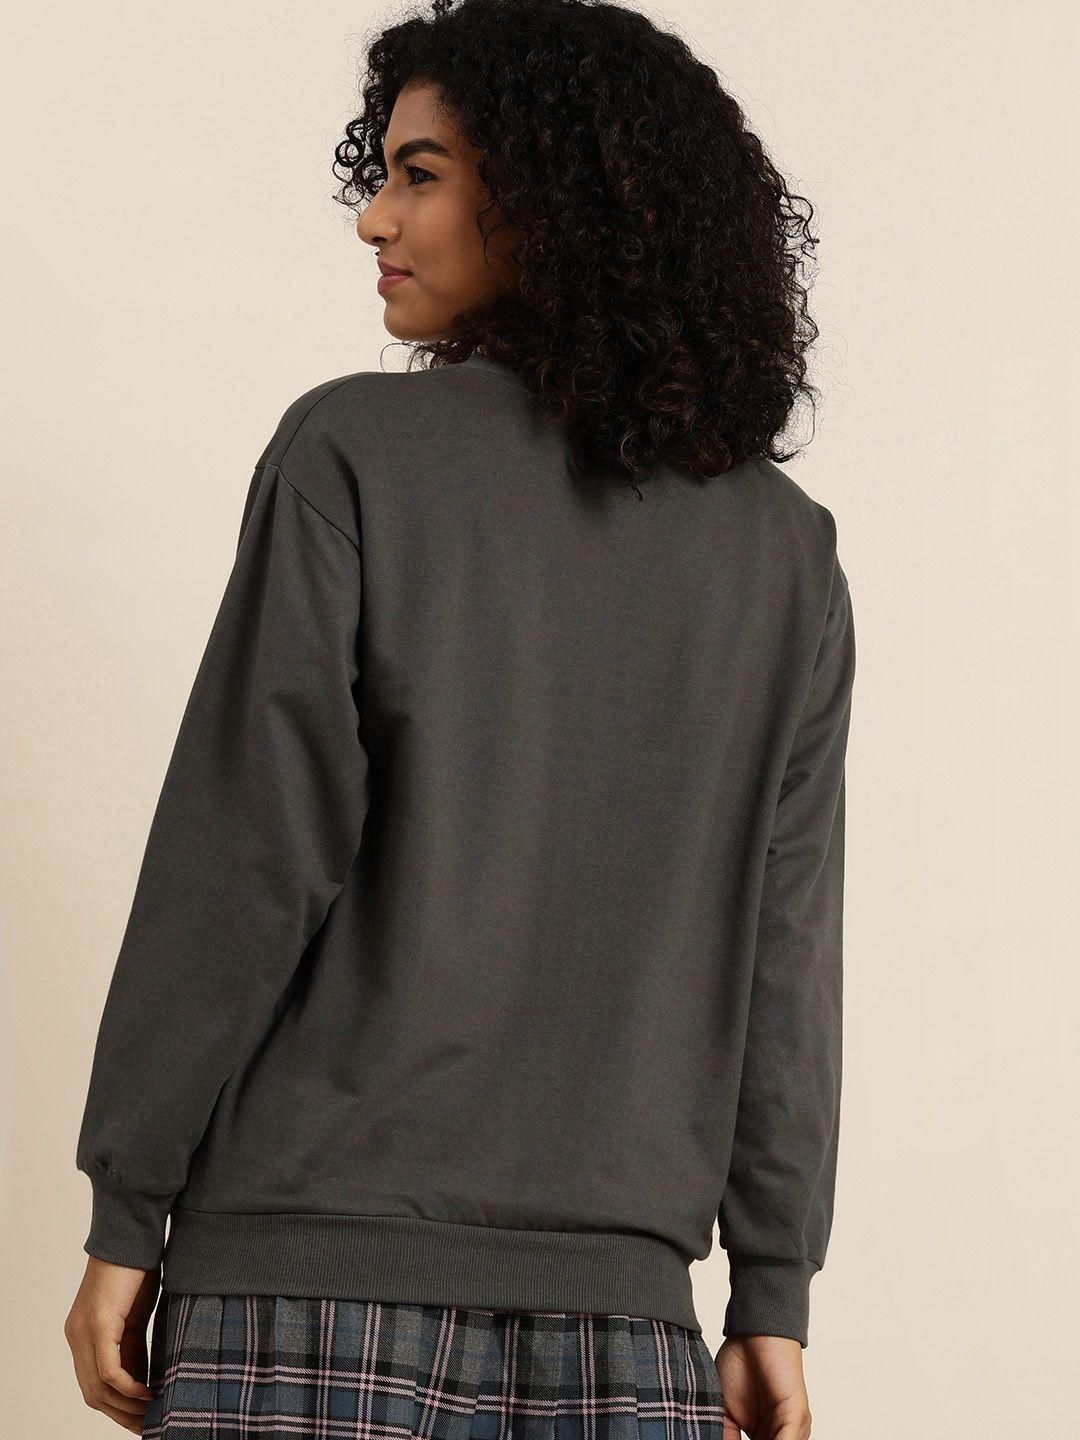 Dillinger Women's Grey Typographic Oversized Sweatshirt